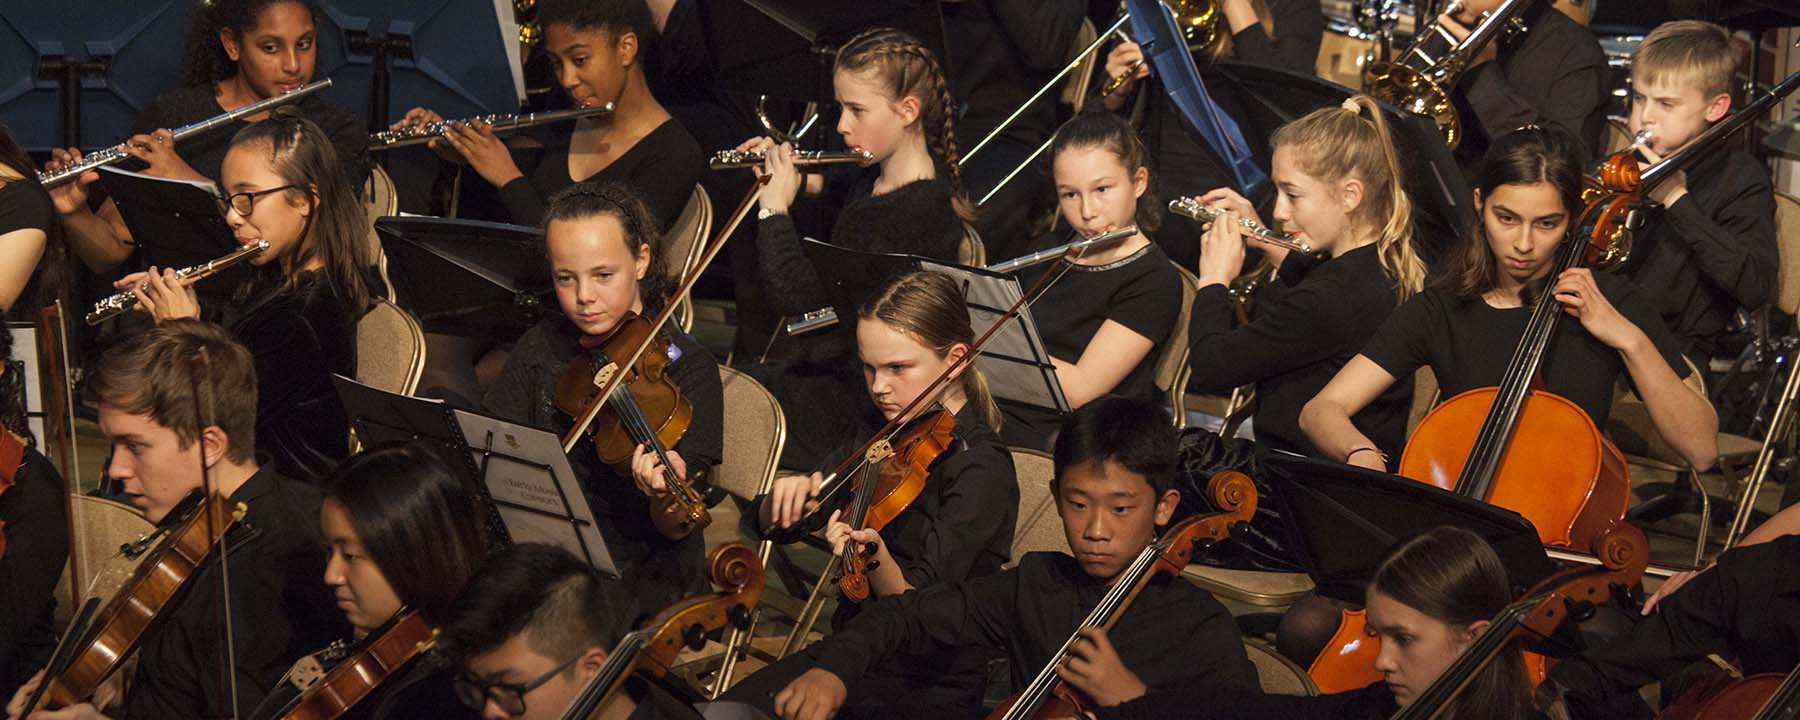 Autumn Concert A Musical Highlight Caterham School